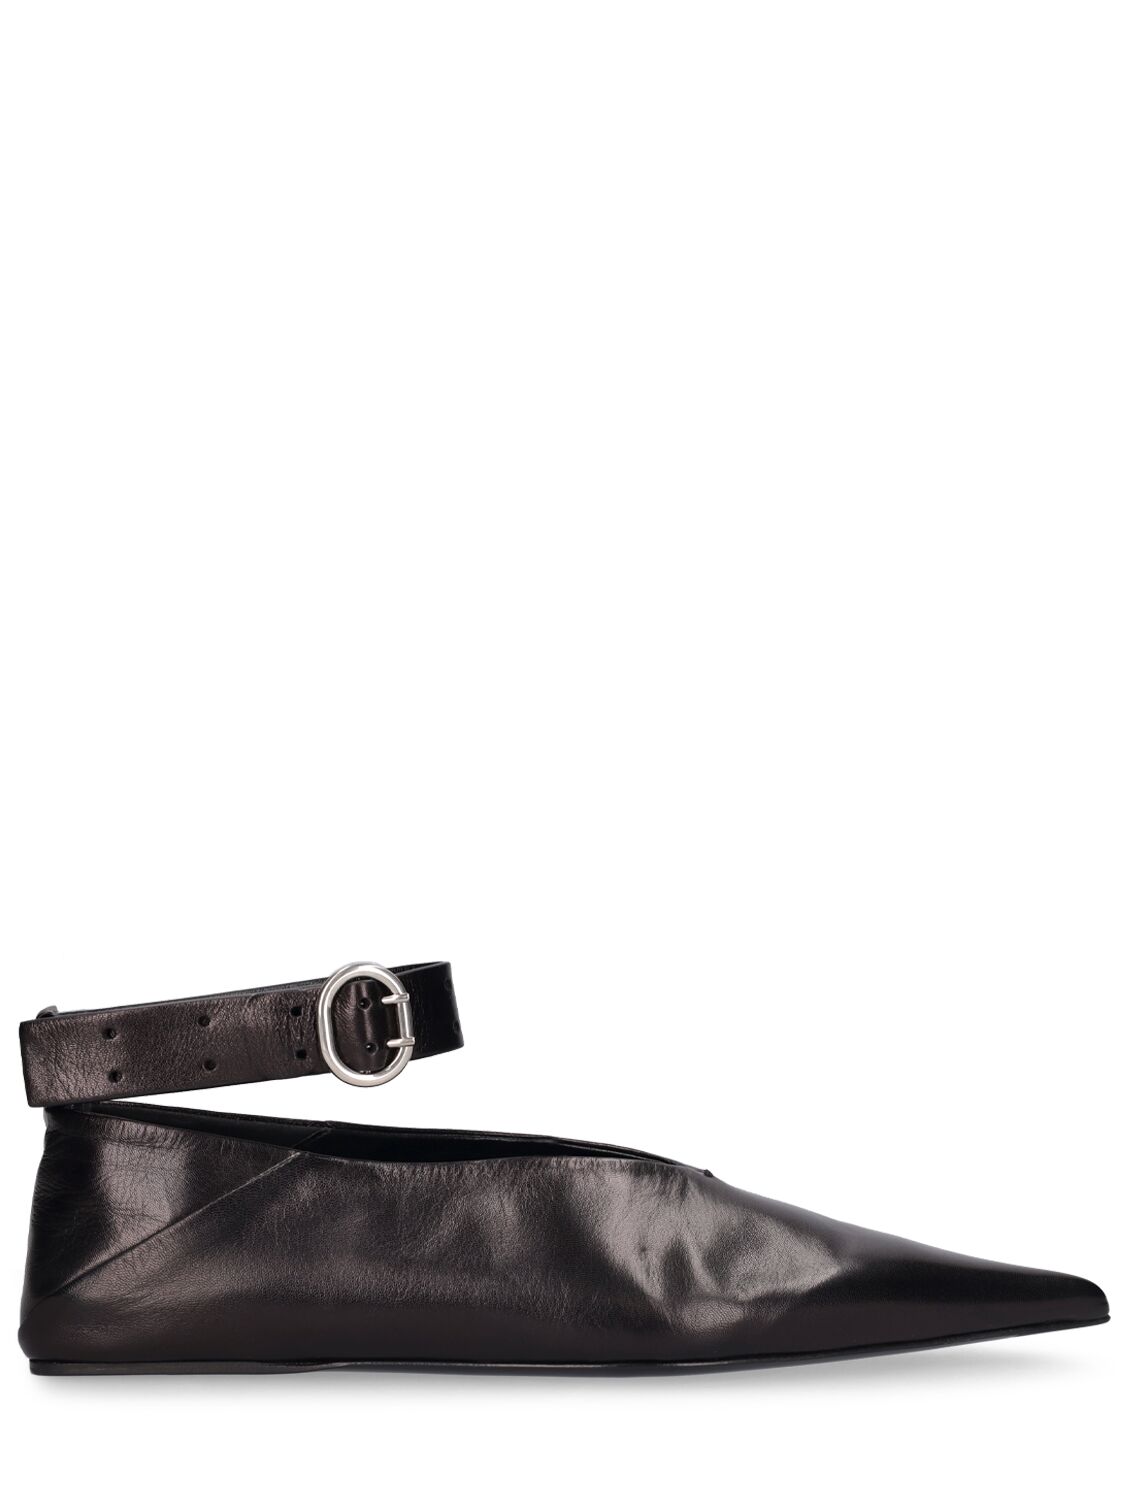 Shop Jil Sander 10mm Leather Ballerina Flats In Black